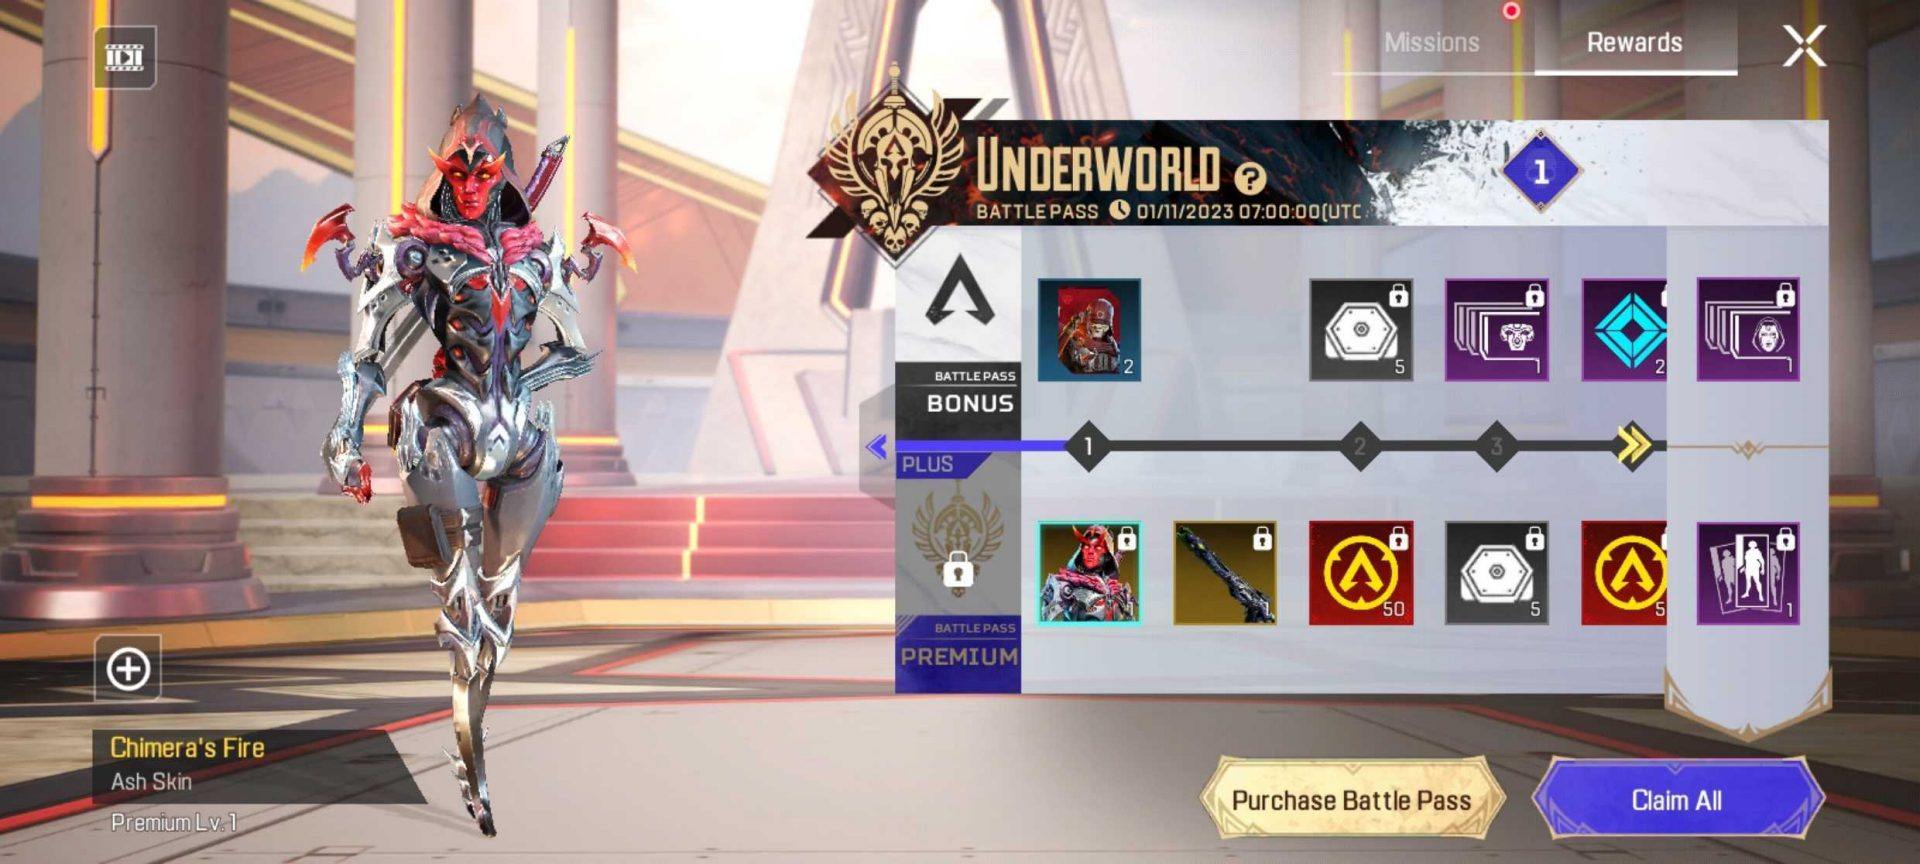 Apex Legends Mobile enthüllt das Underworld Update mit neuen Charakteren und Spielmodi